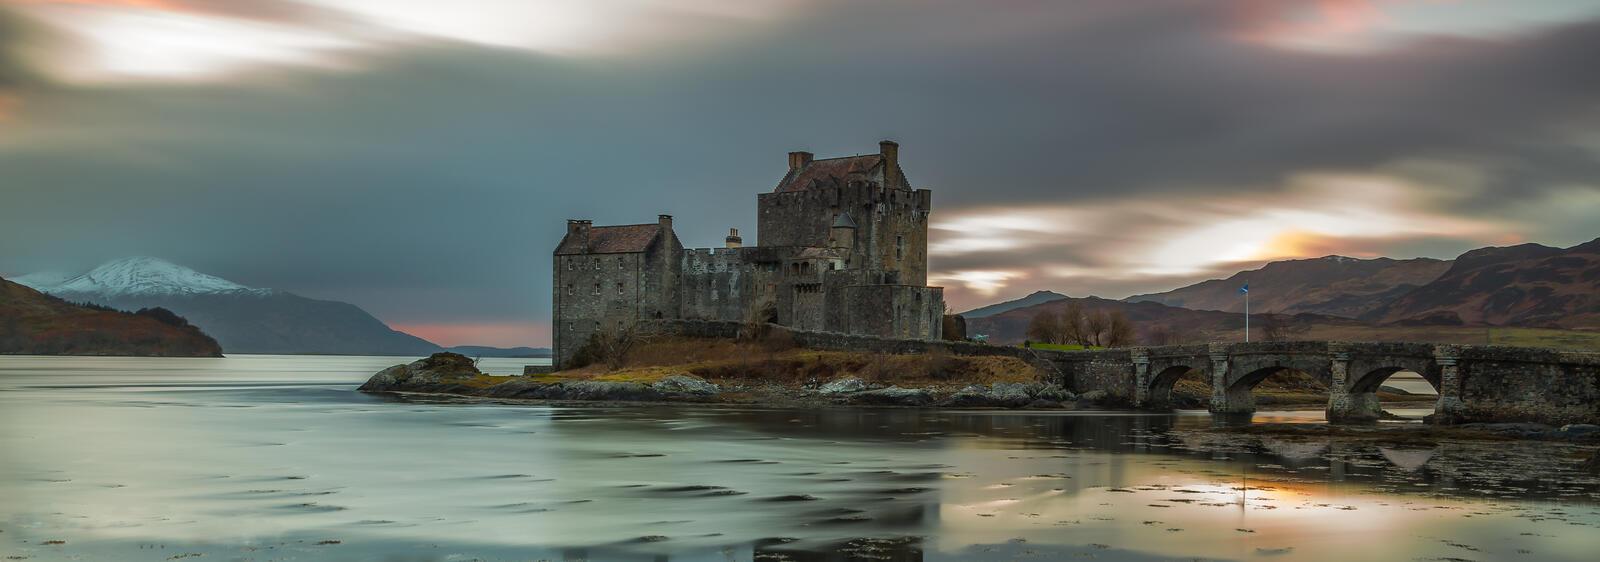 Бесплатное фото Панорама с замком в Шотландии